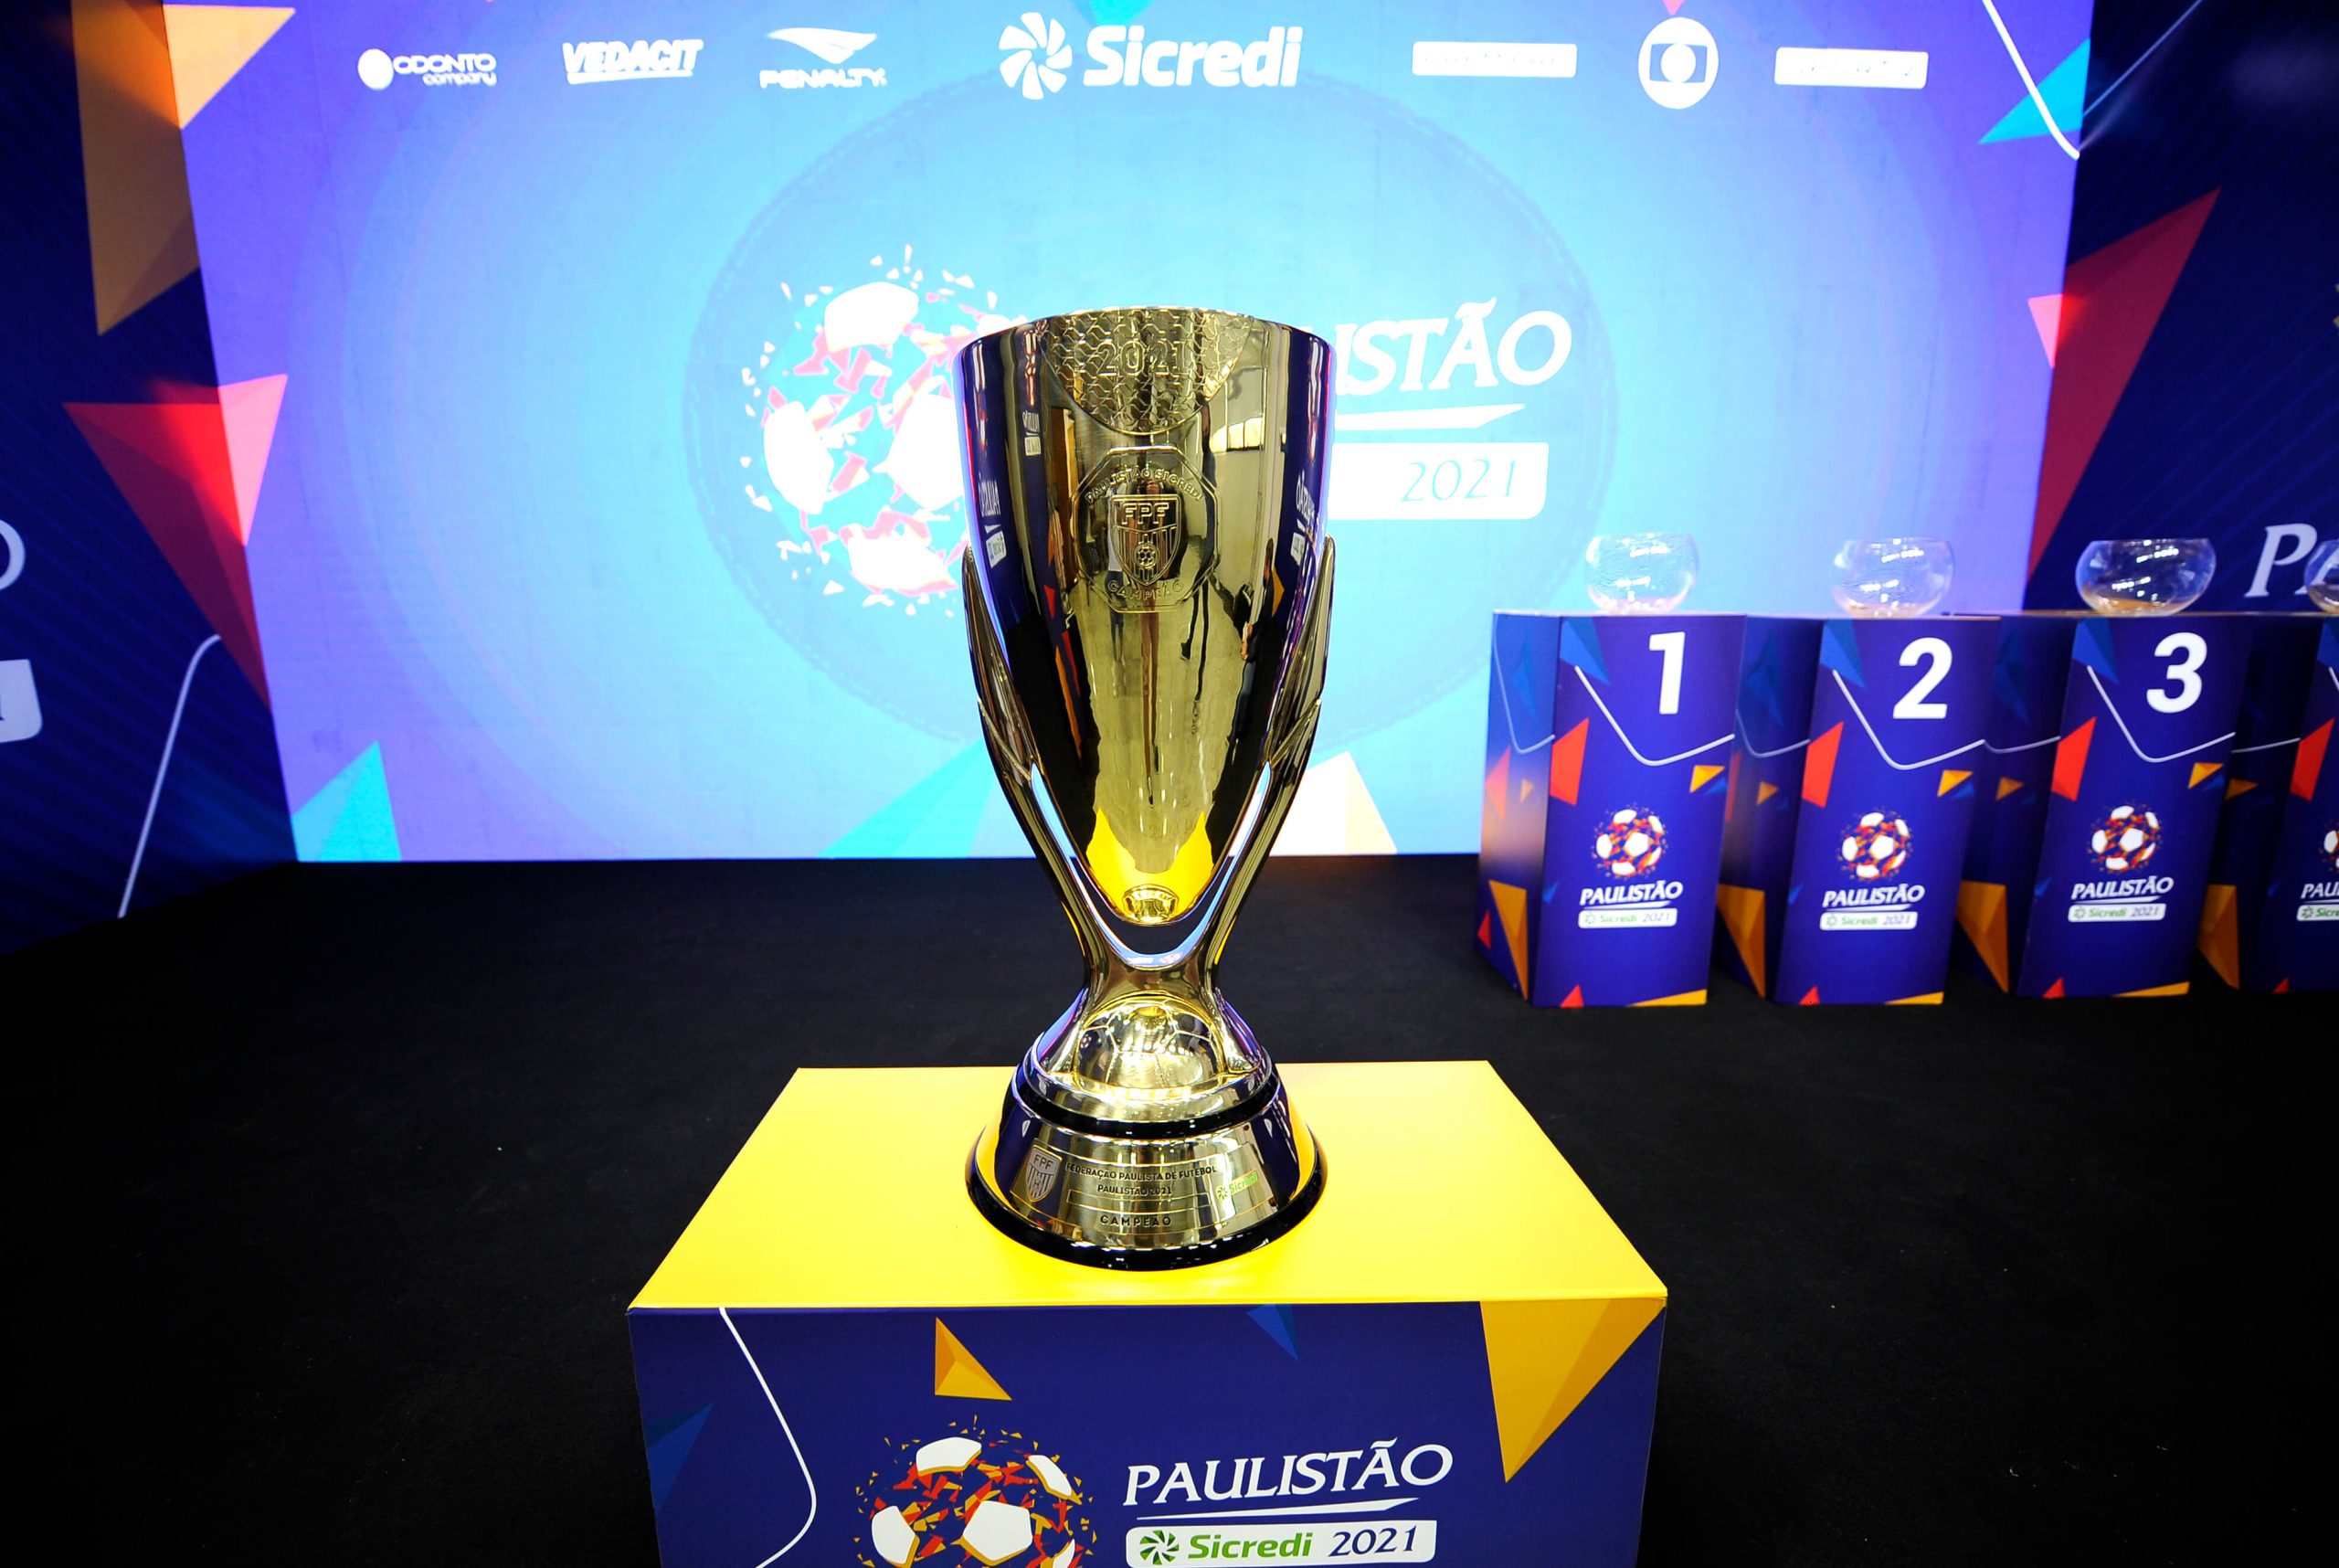 Sorteio define grupos do Campeonato Paulista 2023; veja detalhes